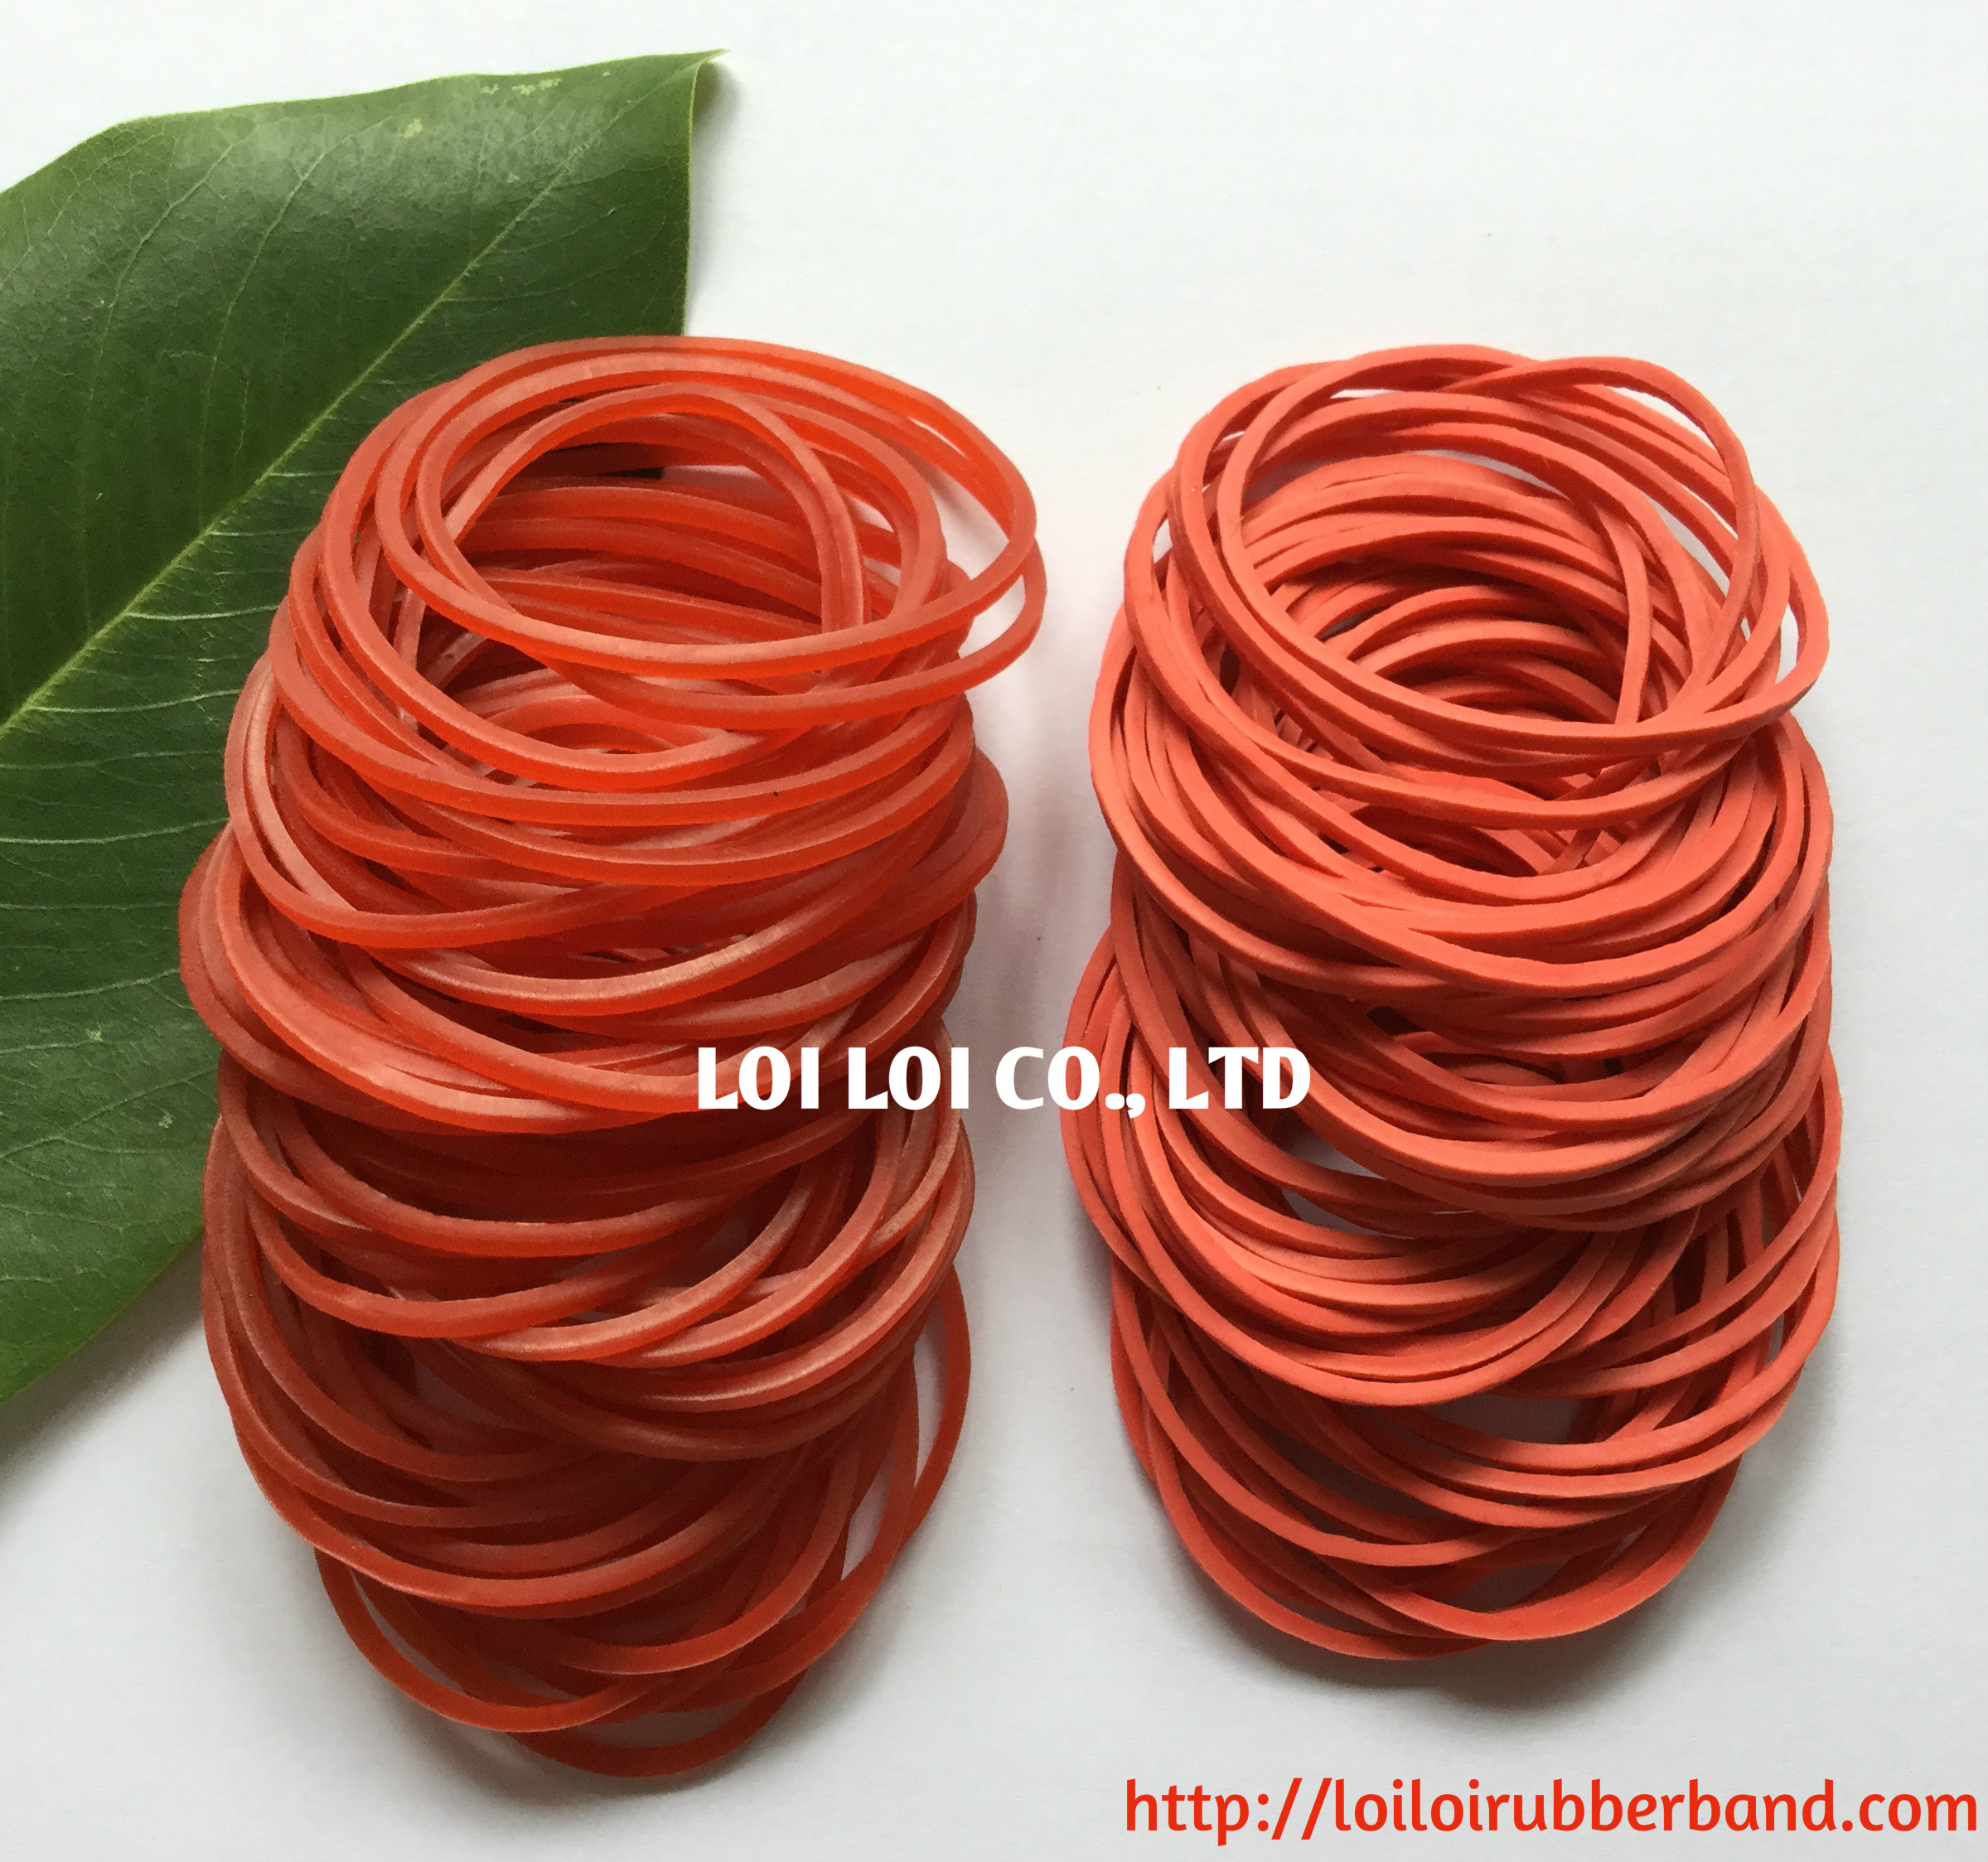 Dây thun sản xuất từ cao su thiên nhiên màu đỏ dùng trong Văn phòng phẩm / Mẫu thử miễn phí cung cấp từ Nhà máy sản xuất dây chun lớn tại Việt Nam